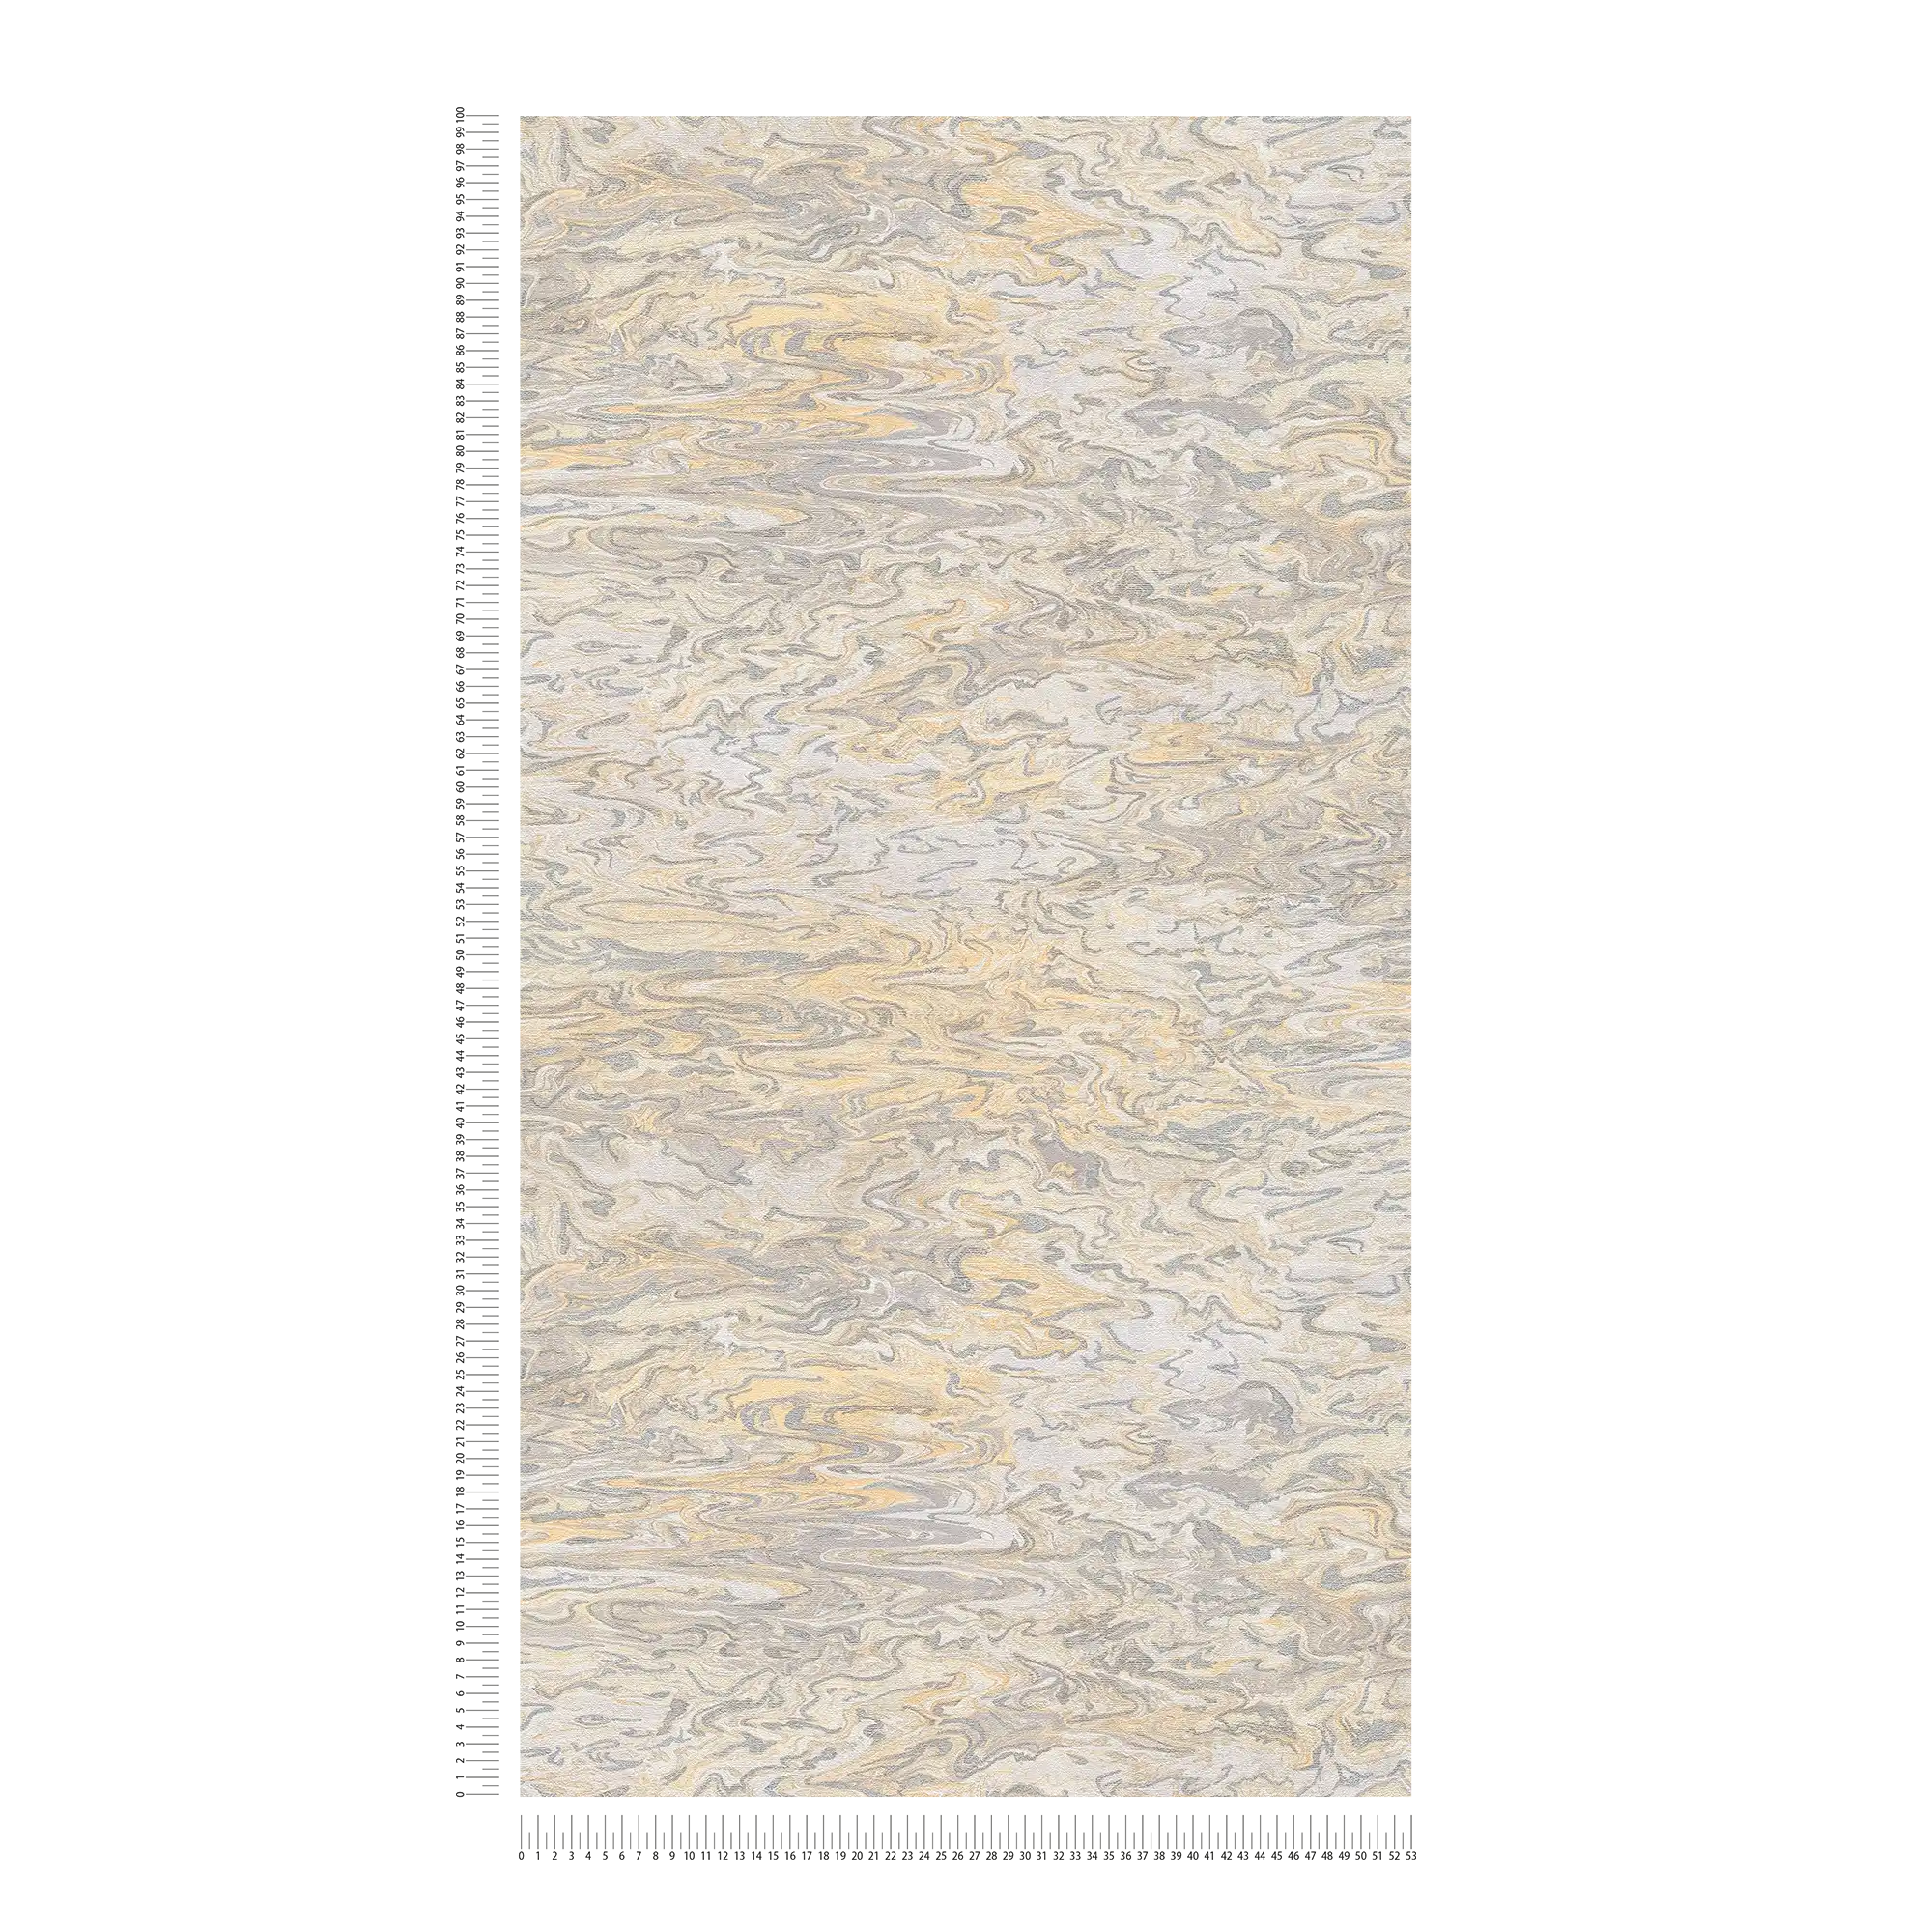             Carta da parati marmorizzata dal design astratto - beige, grigio, crema
        